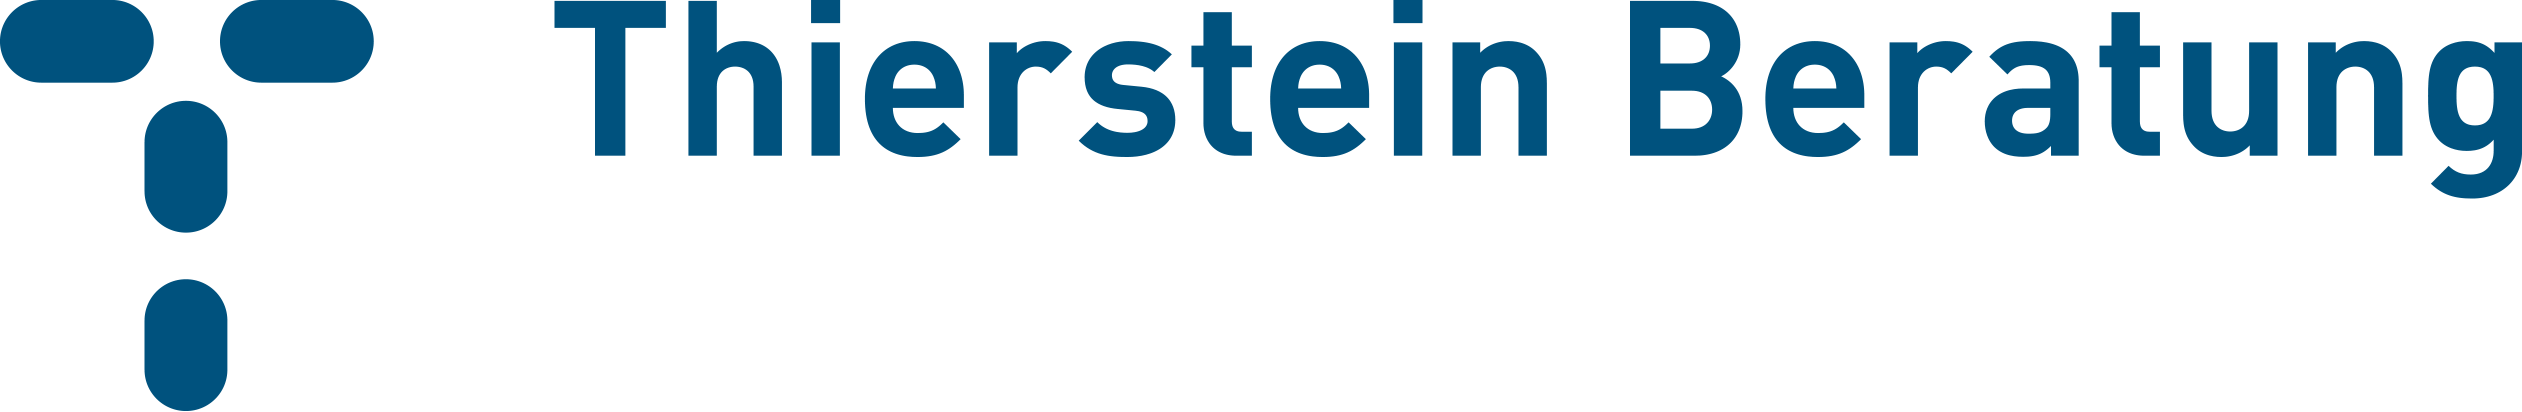 Thierstein Beratung GmbH